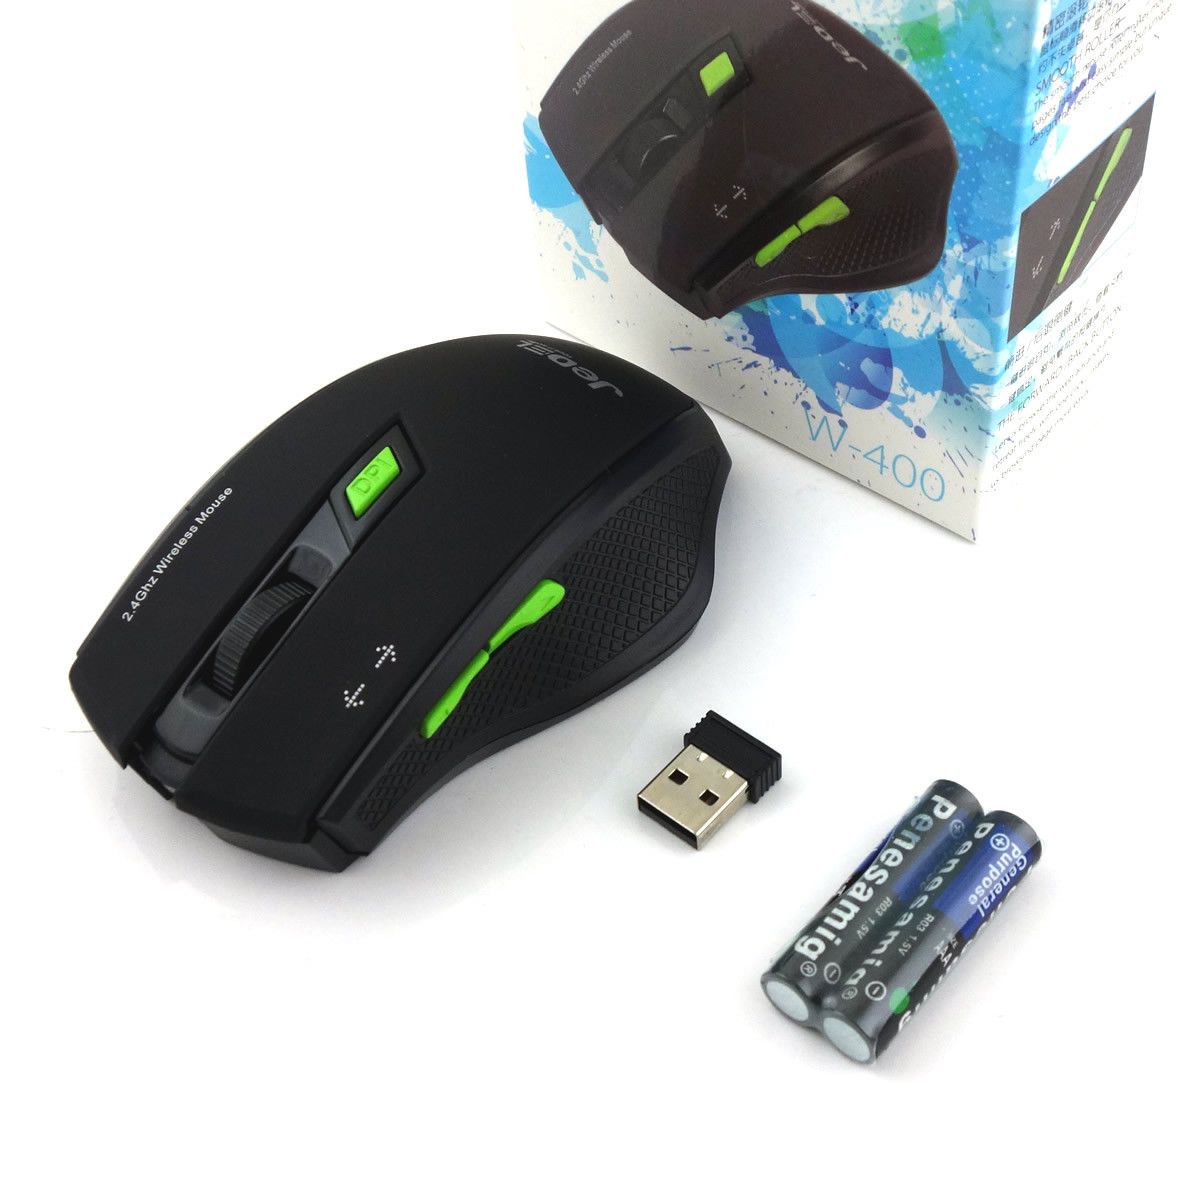 Jedel Souris Sans Fil - Mouse Optique Wireless W920 - Souris